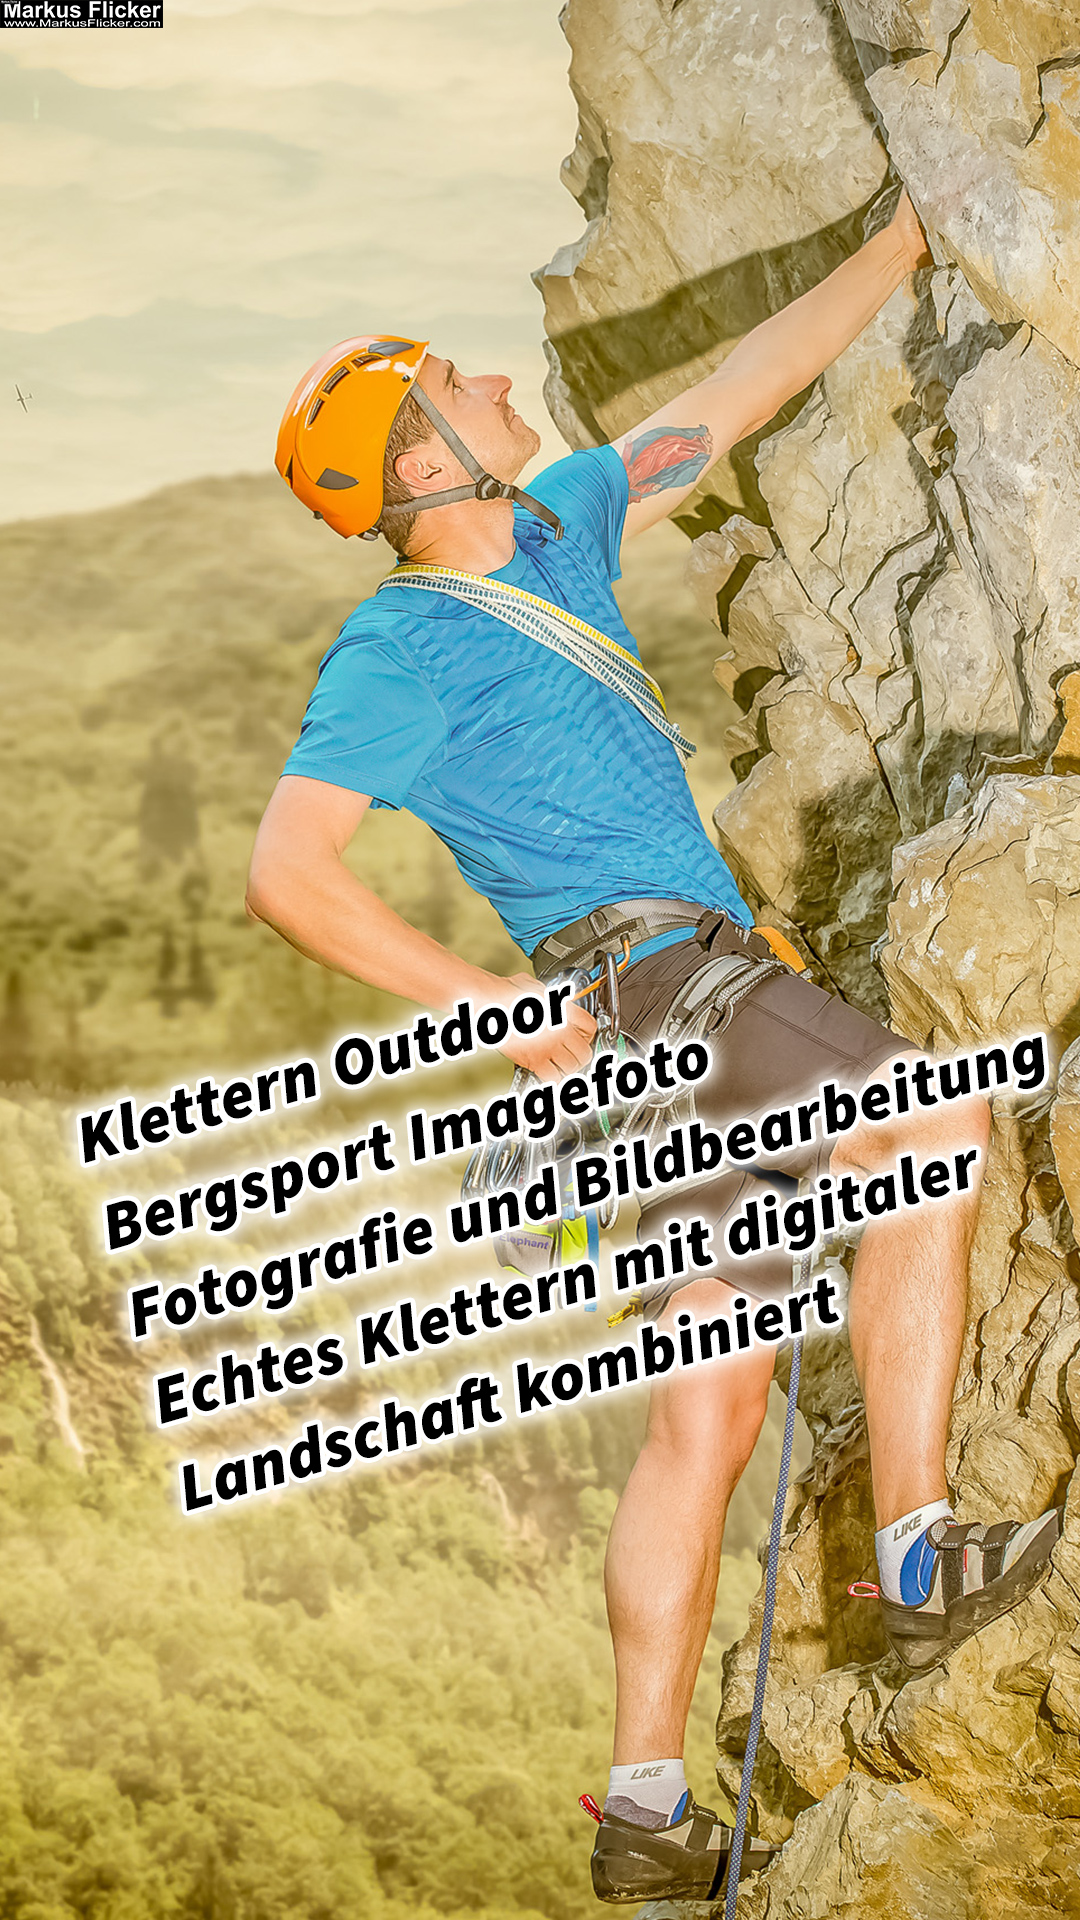 Klettern Outdoor Bergsport Imagefoto Fotografie und Bildbearbeitung Echtes Klettern mit digitaler Landschaft kombiniert